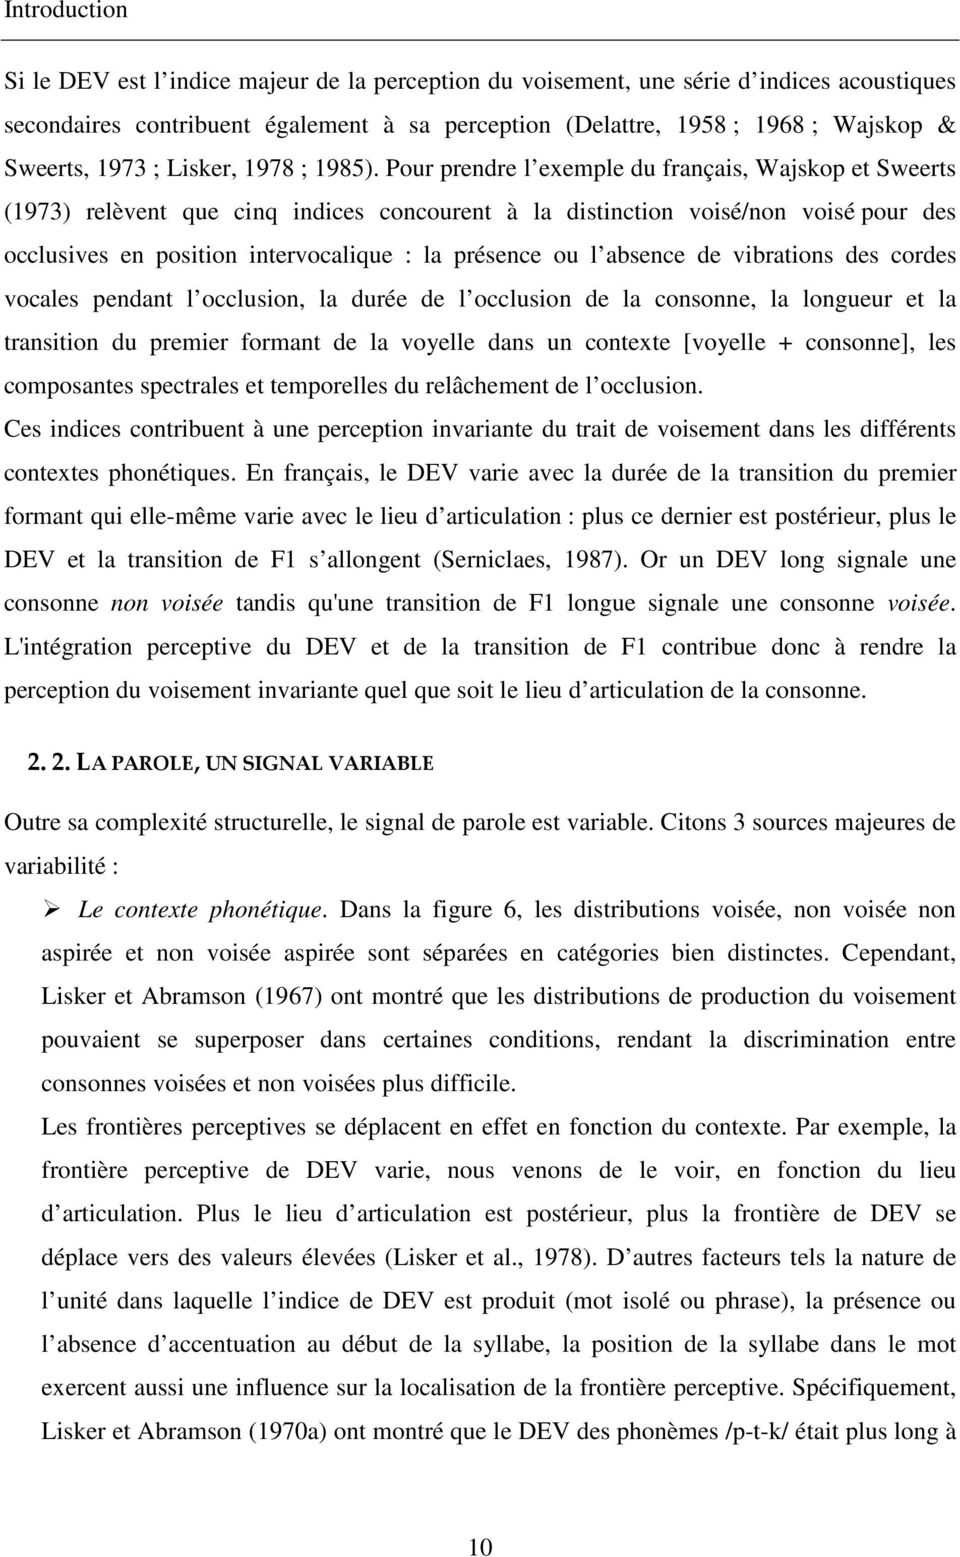 Pour prendre l exemple du français, Wajskop et Sweerts (1973) relèvent que cinq indices concourent à la distinction voisé/non voisé pour des occlusives en position intervocalique : la présence ou l